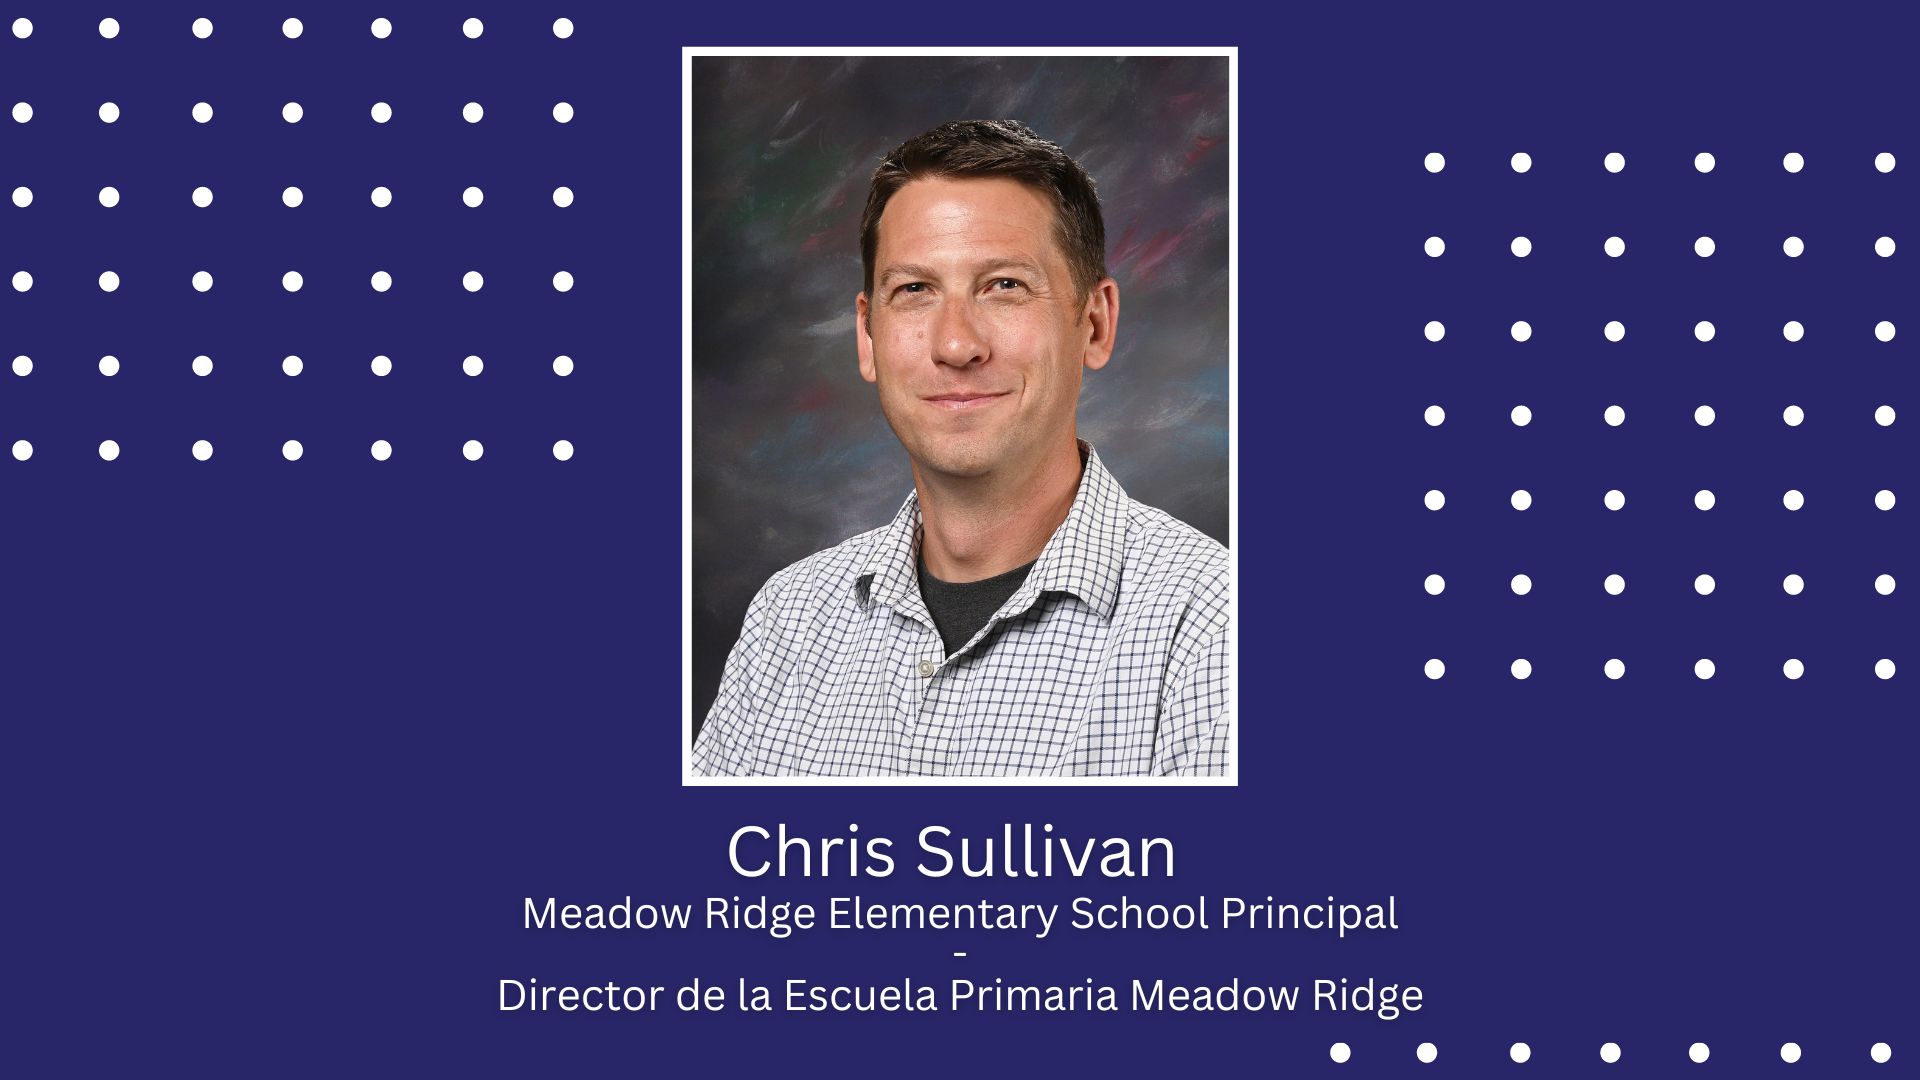 Chris Sullivan to lead Meadow Ridge Elementary School / El Sr. Chris Sullivan liderará la Escuela Primaria Meadow Ridge.